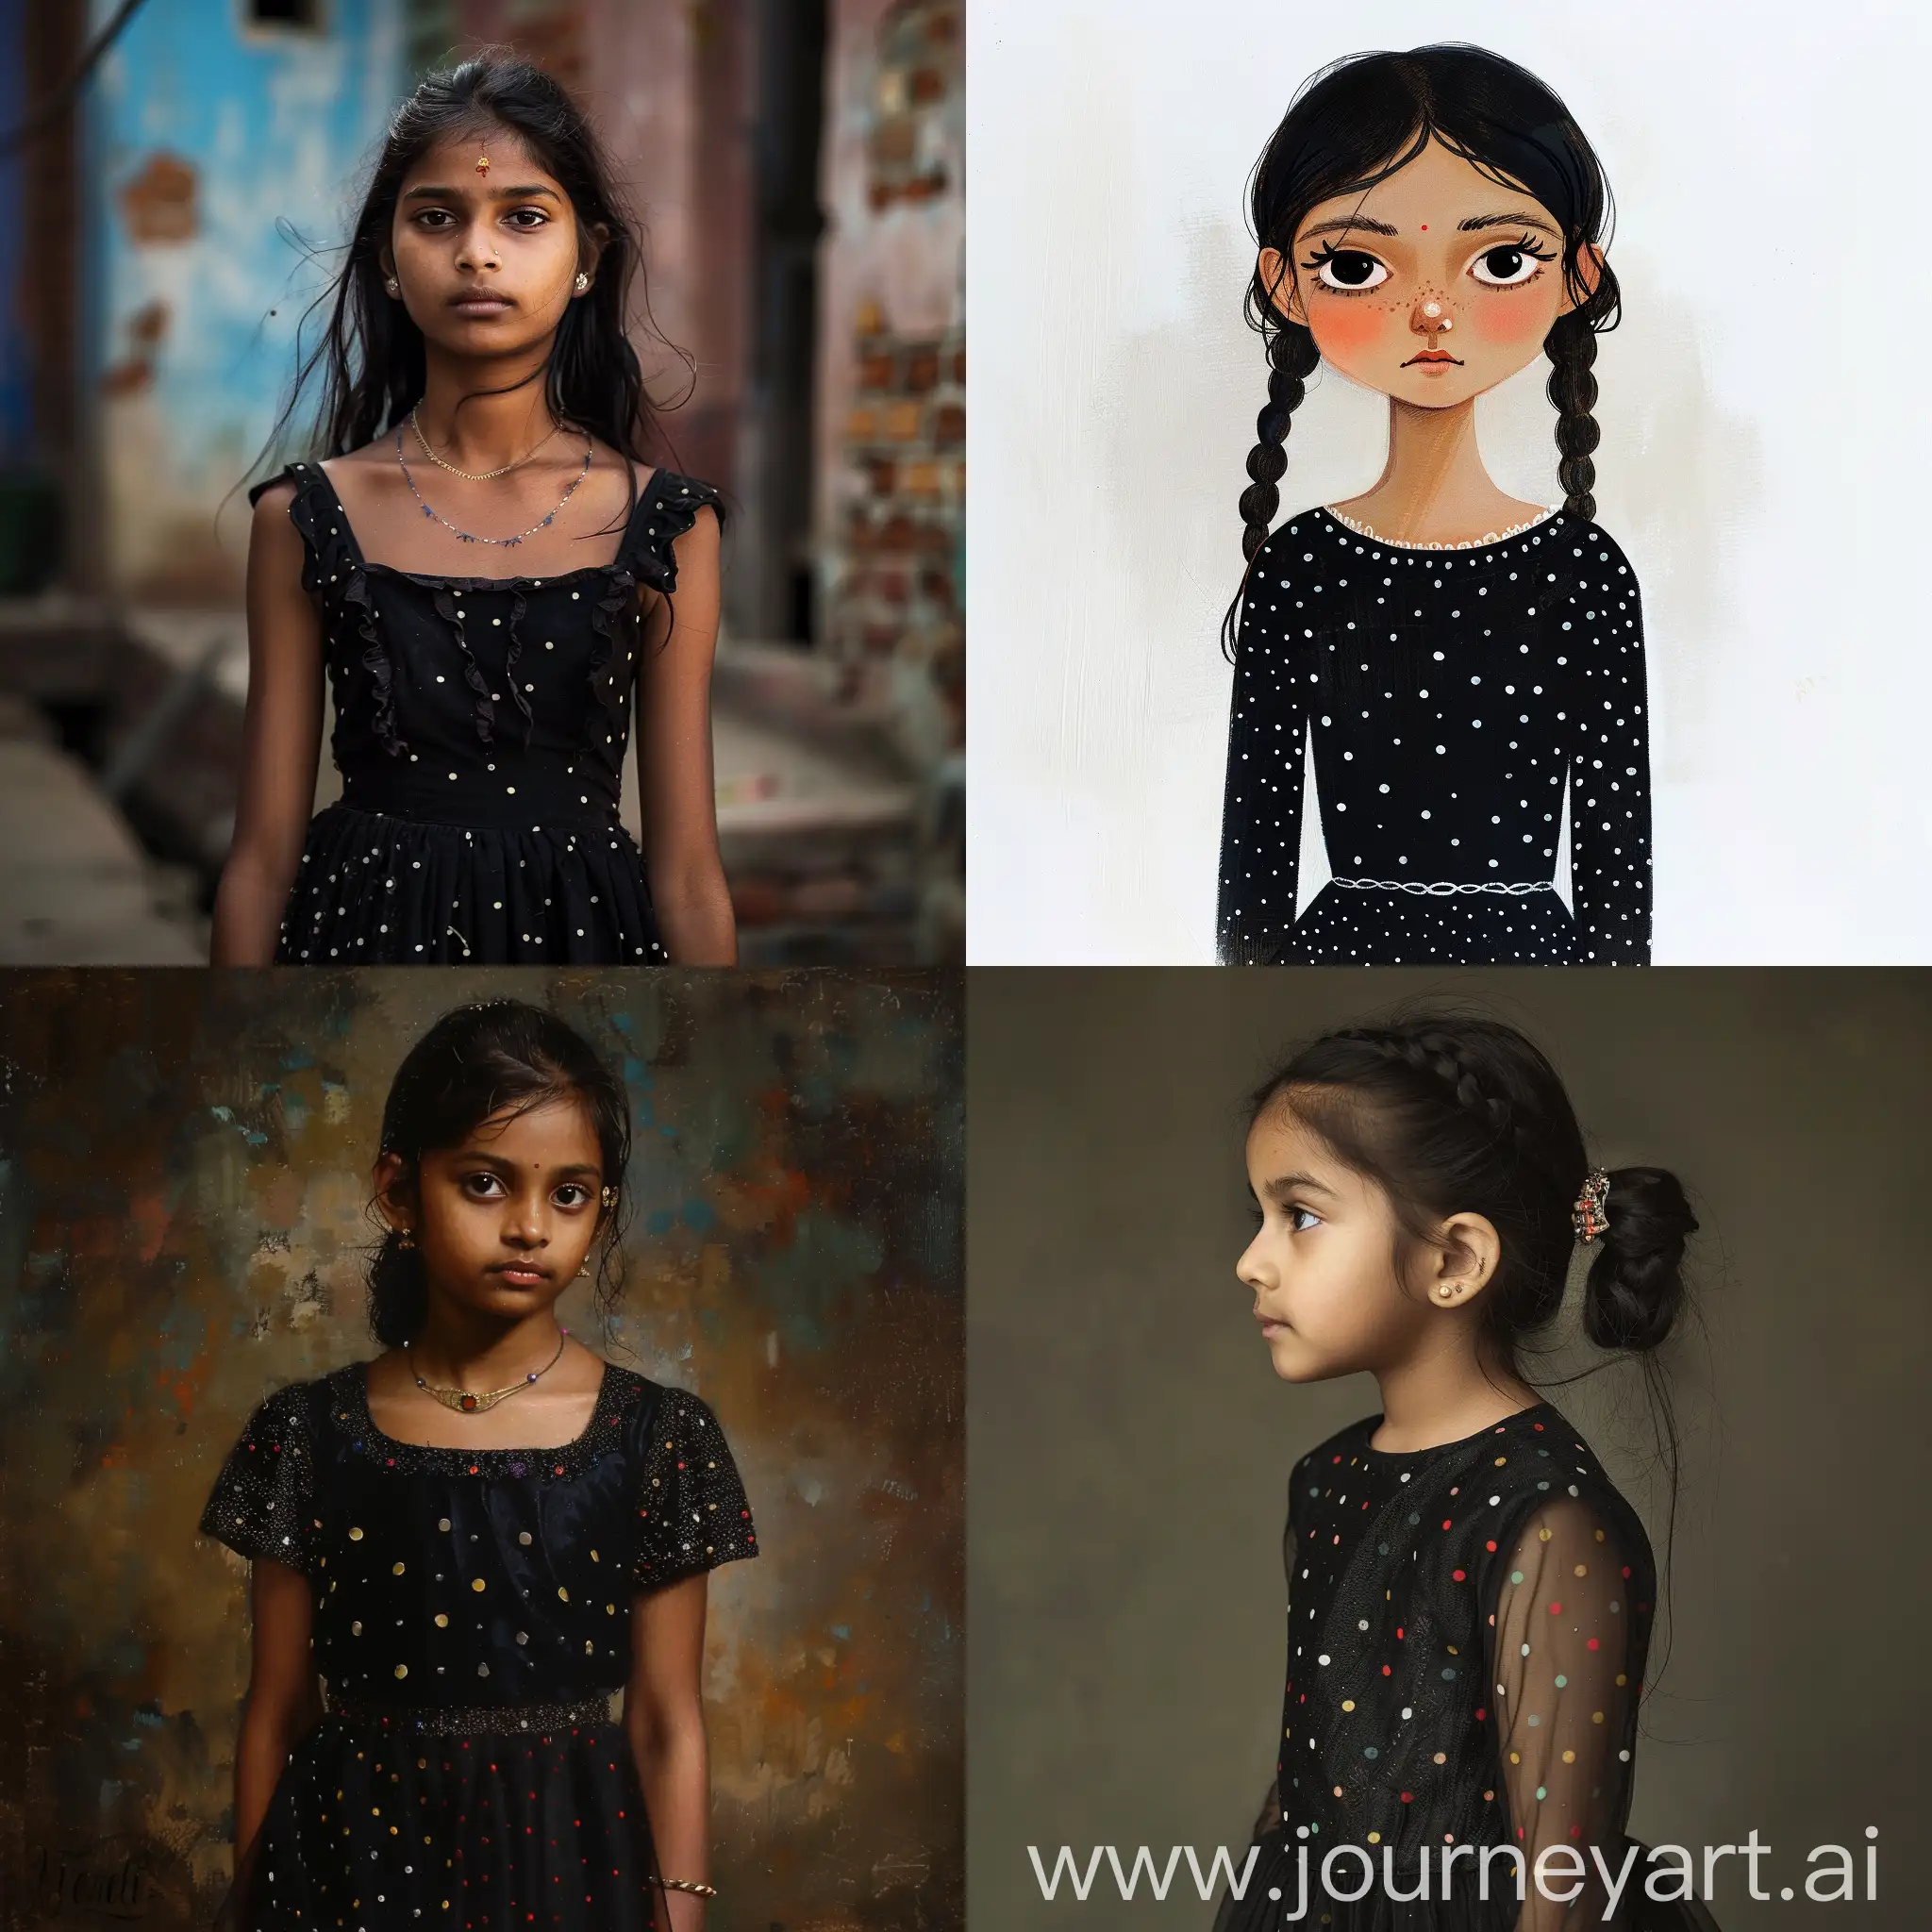 Indian-Girl-in-Elegant-Black-Polka-Dot-Dress